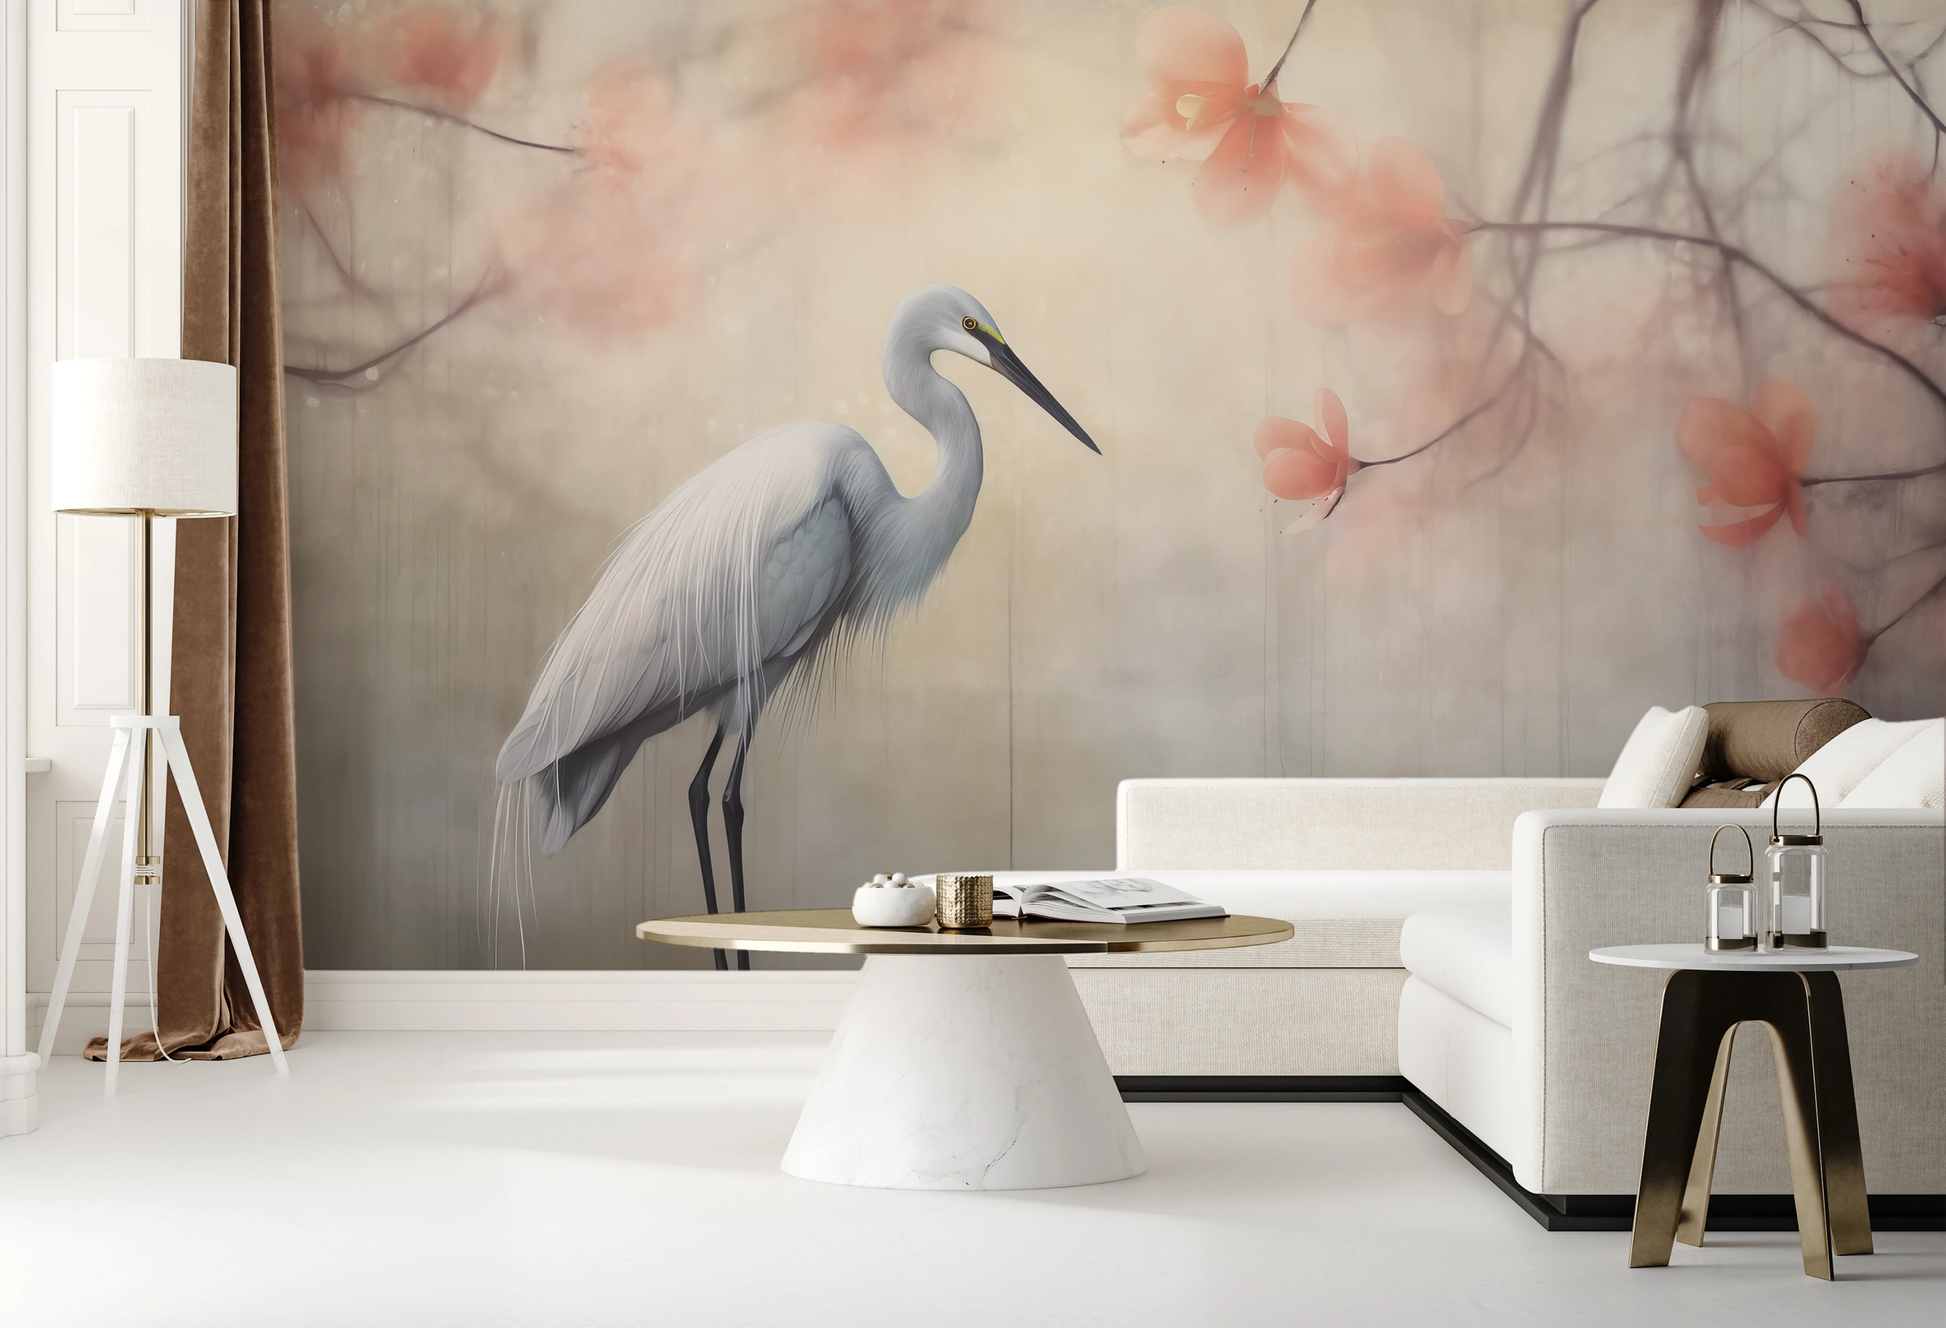 Wzór fototapety artystycznej o nazwie Heron Elegance pokazanej w aranżacji wnętrza.